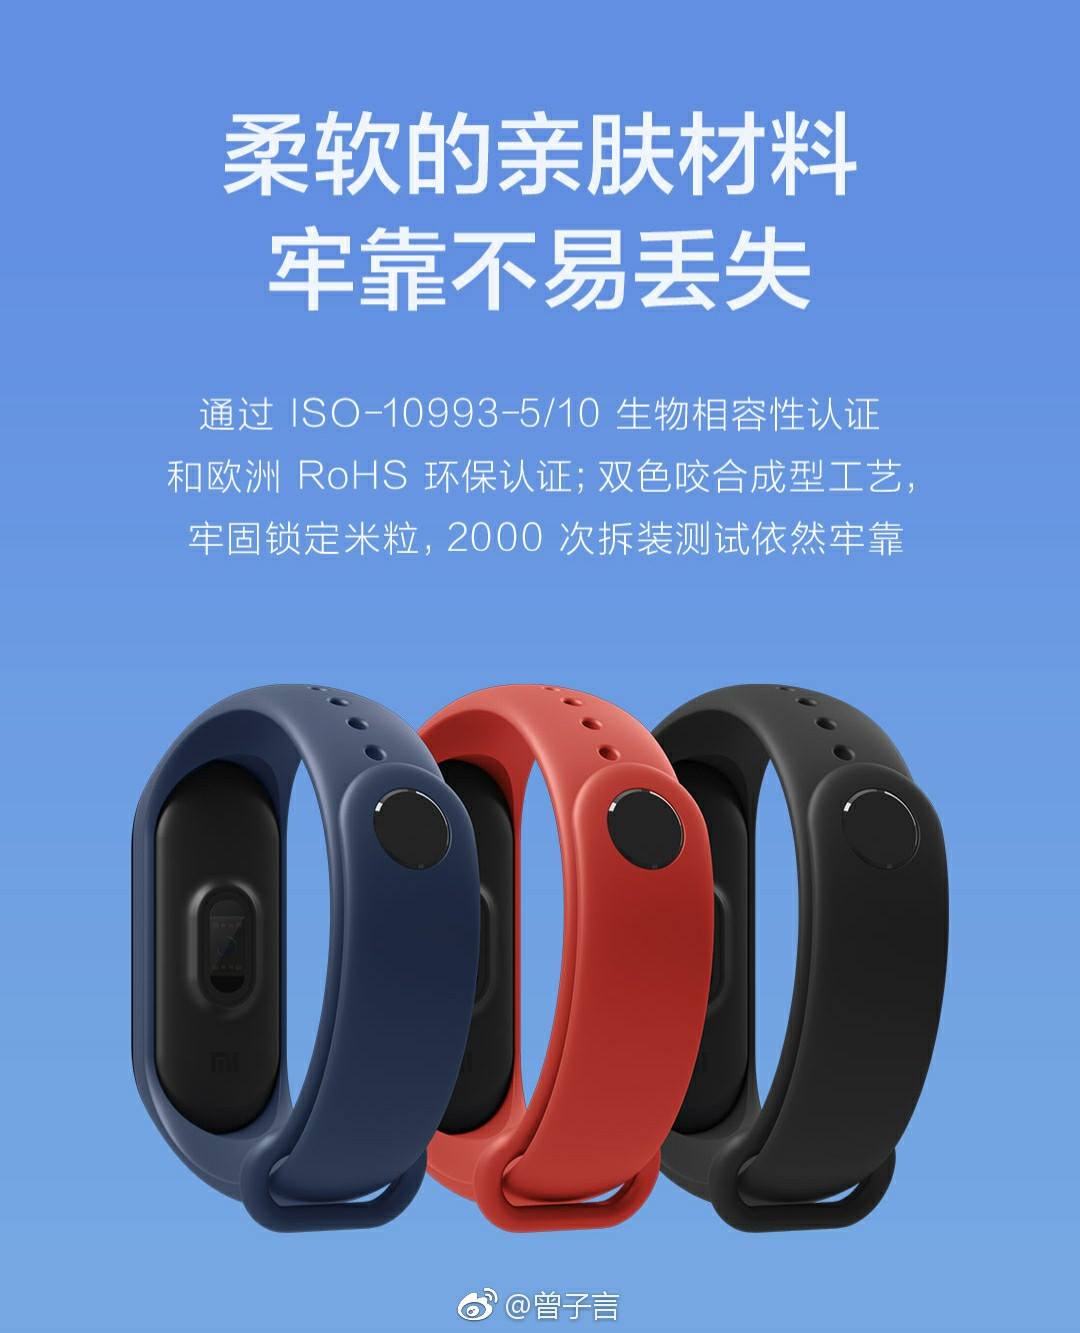 Xiaomi Mi Band 3 lộ toàn bộ thông số trước giờ ra
mắt